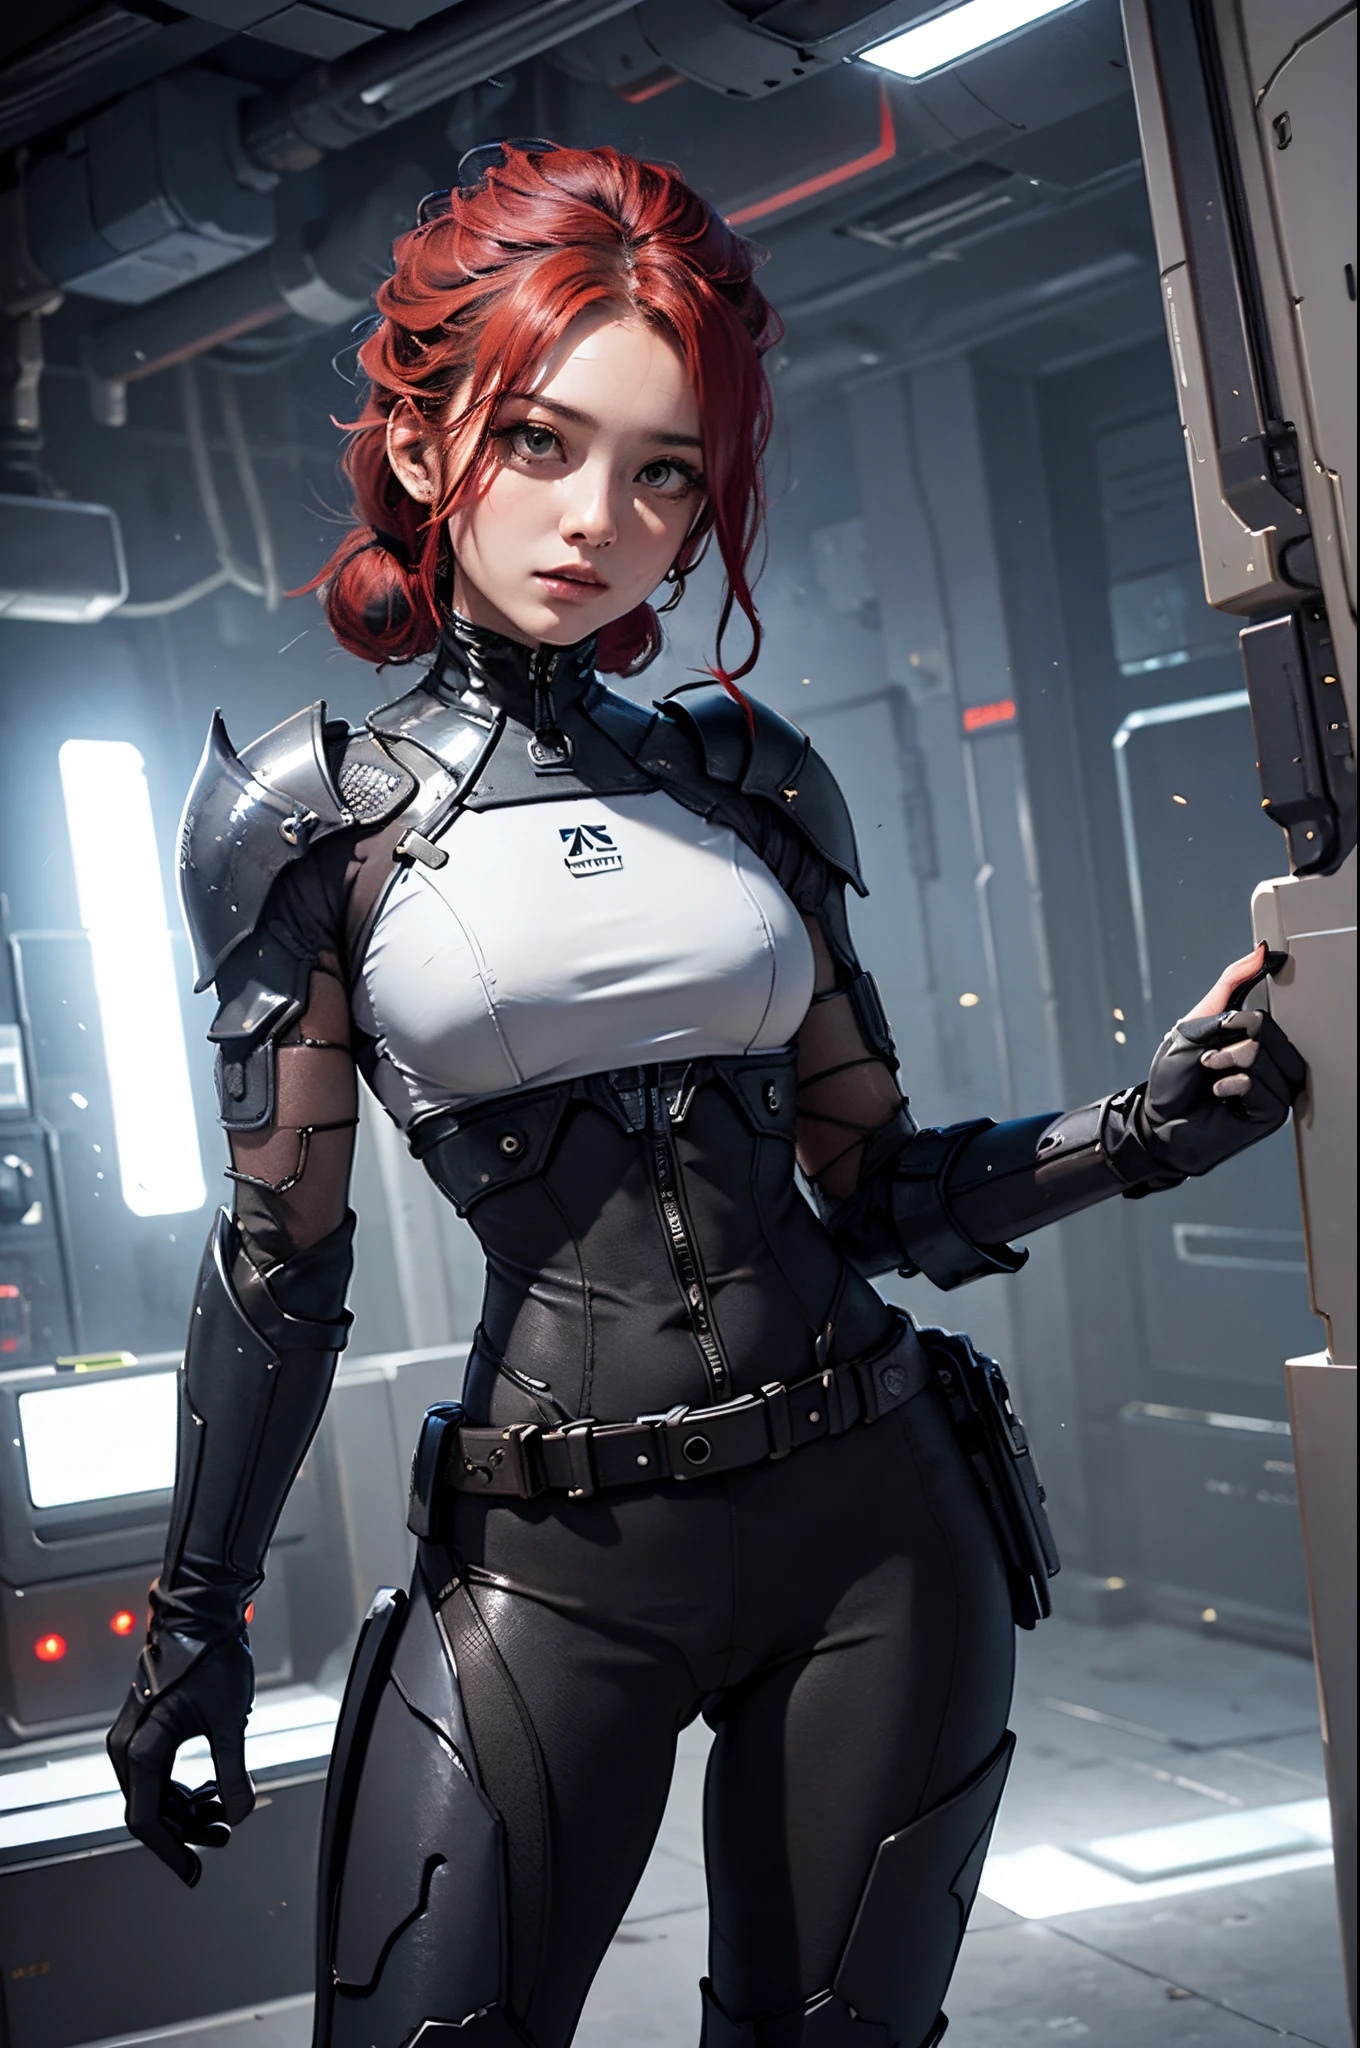 (CORPO de mulher LATINA, quadris largos:1.3), segurando arma,((dedos precisos, dedos corretos, lindos dedos)),armadura futurista em baús pequenos, Mulher asiática de 37 anos, poses dinâmicas,alça de equipamento de cabelo vermelho na cintura, arma no quadril, (Maiô :1.2), (luvas de armadura mecânica:1.3),trajes cibernéticos femininos,(Mecânico armor leggins:1.2), Mecânico, eletricidade, detalhe elaborado,armadura em estilo cyberpunk, ciborgue feminino.campo de batalha de diversos trajes cibernéticos, Tiro certeiro, plano integral fotografia, câmera de baixo ângulo,